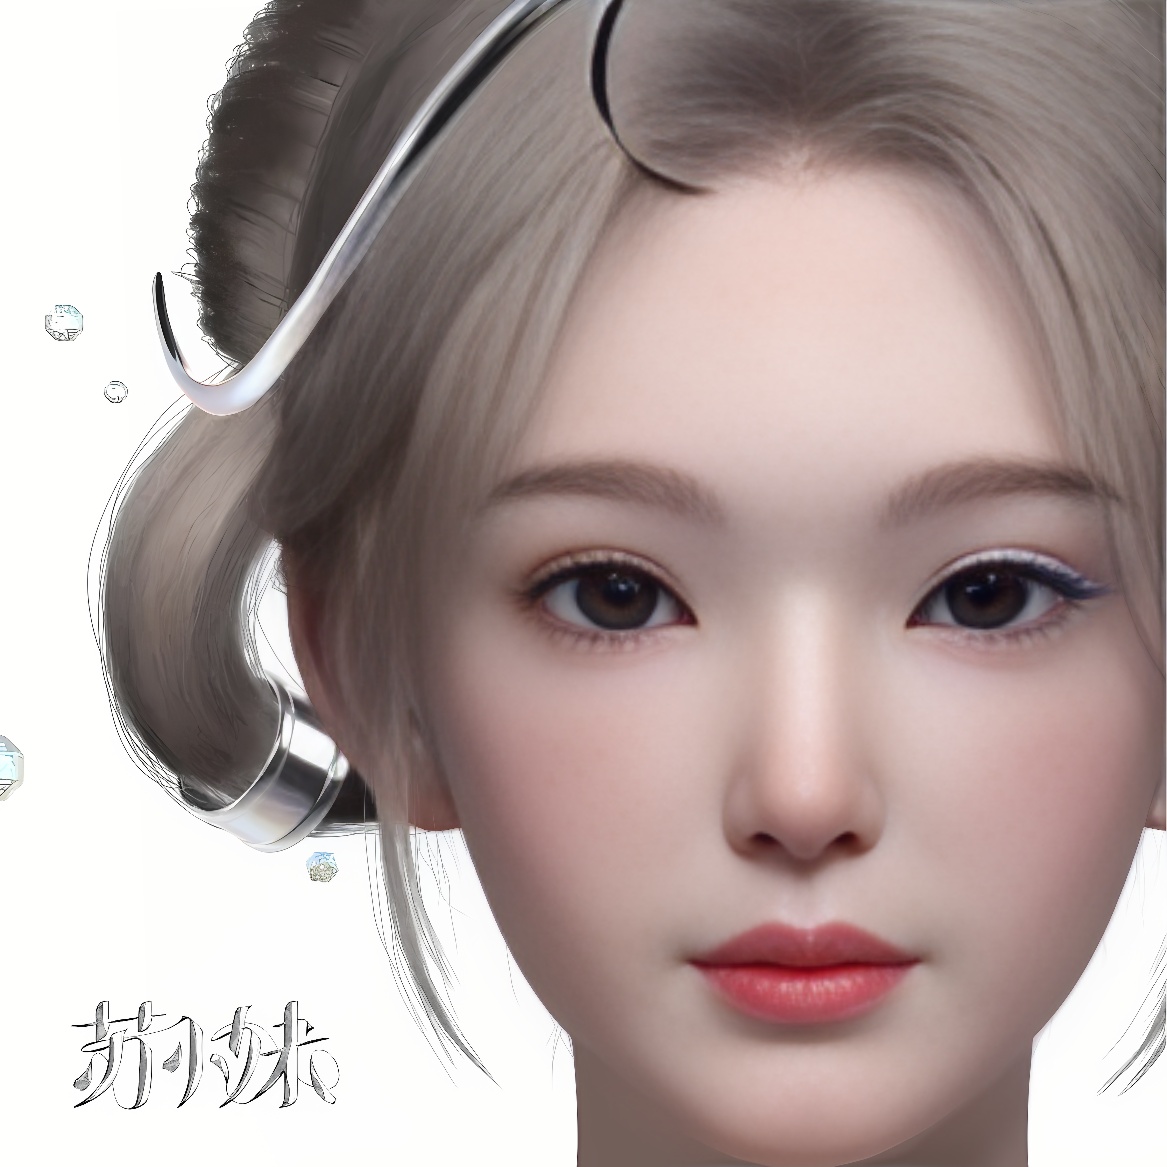 这是一张女性动漫风格的虚拟角色图像，特征精致，眼神清澈，配有银色耳饰和几片飘落的水晶。